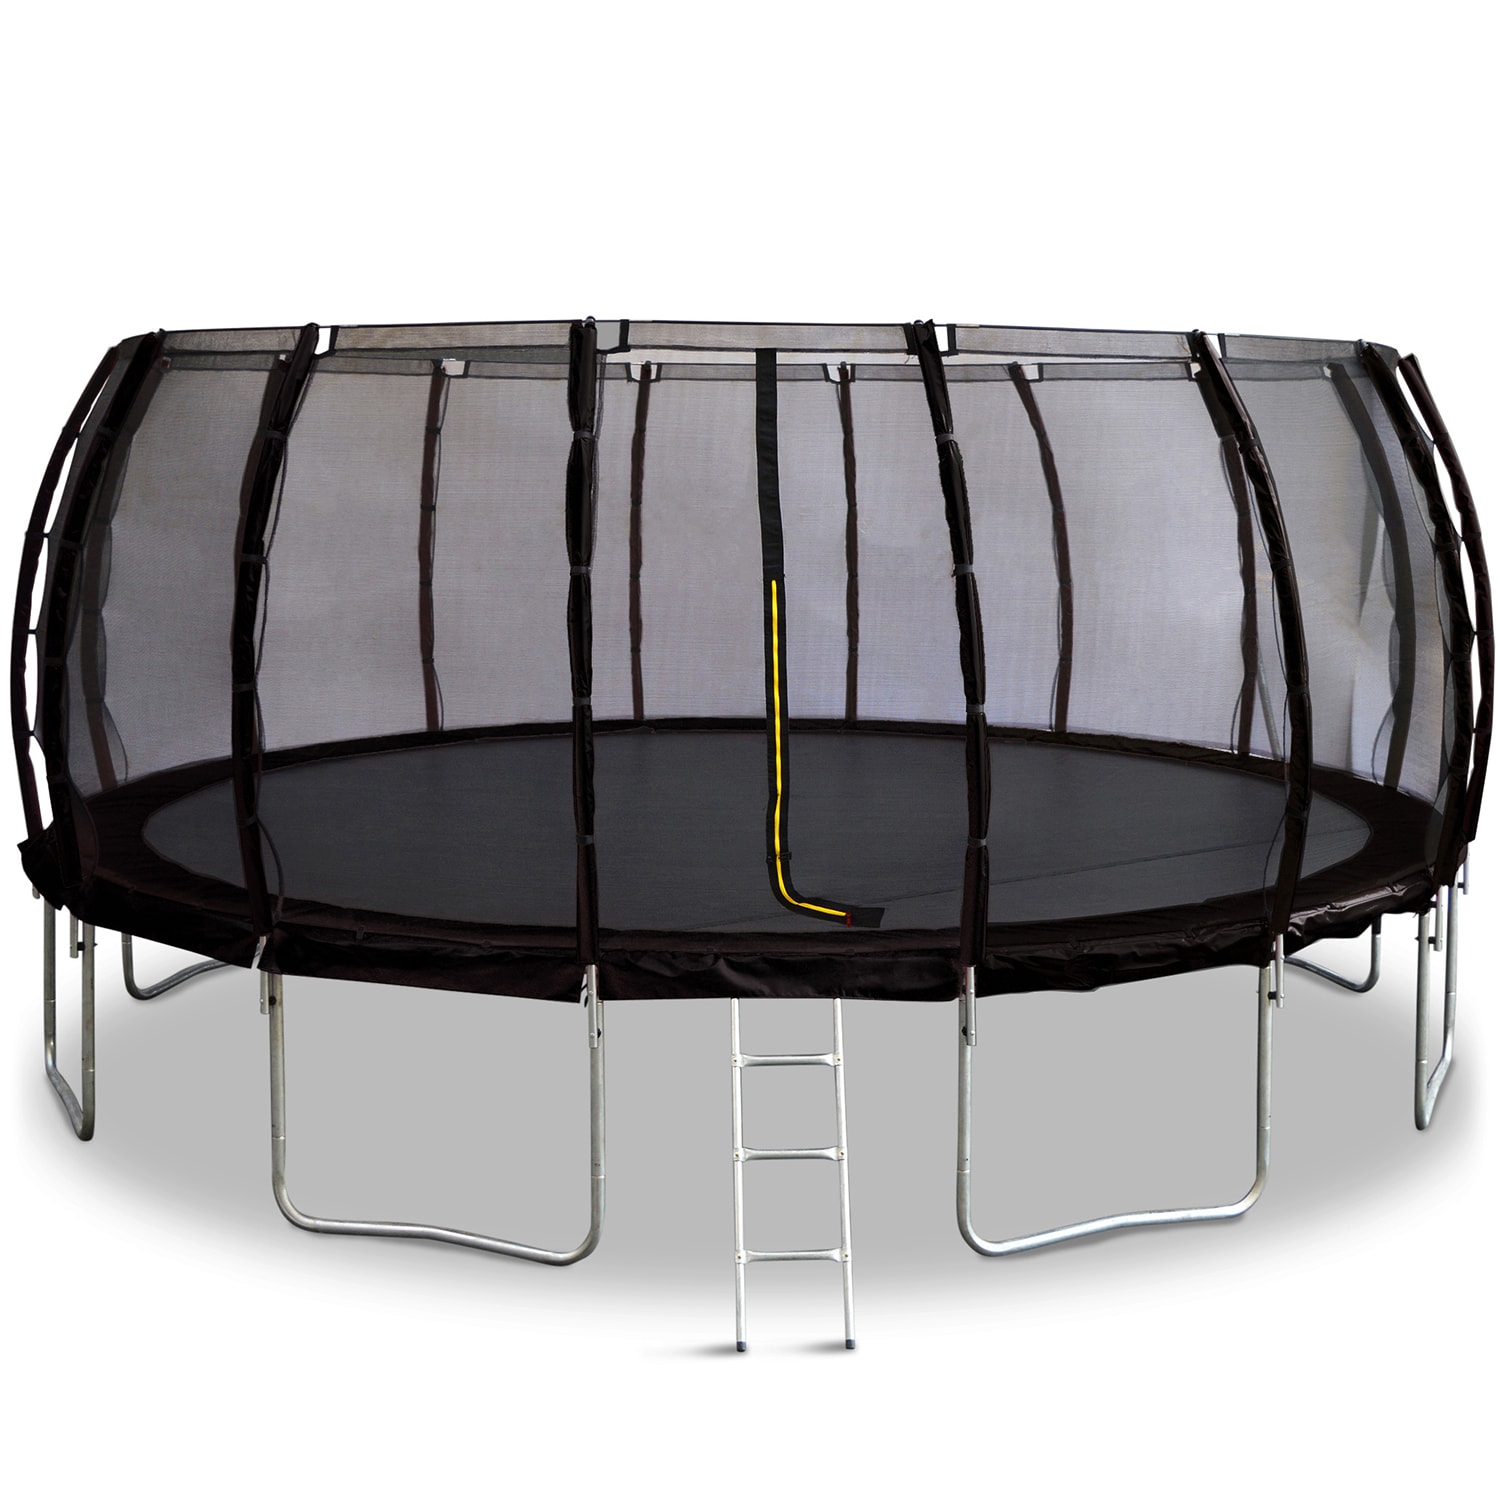 Ødelægge Teenageår positur Kæmpe trampolin Colosseum 5,5m sort